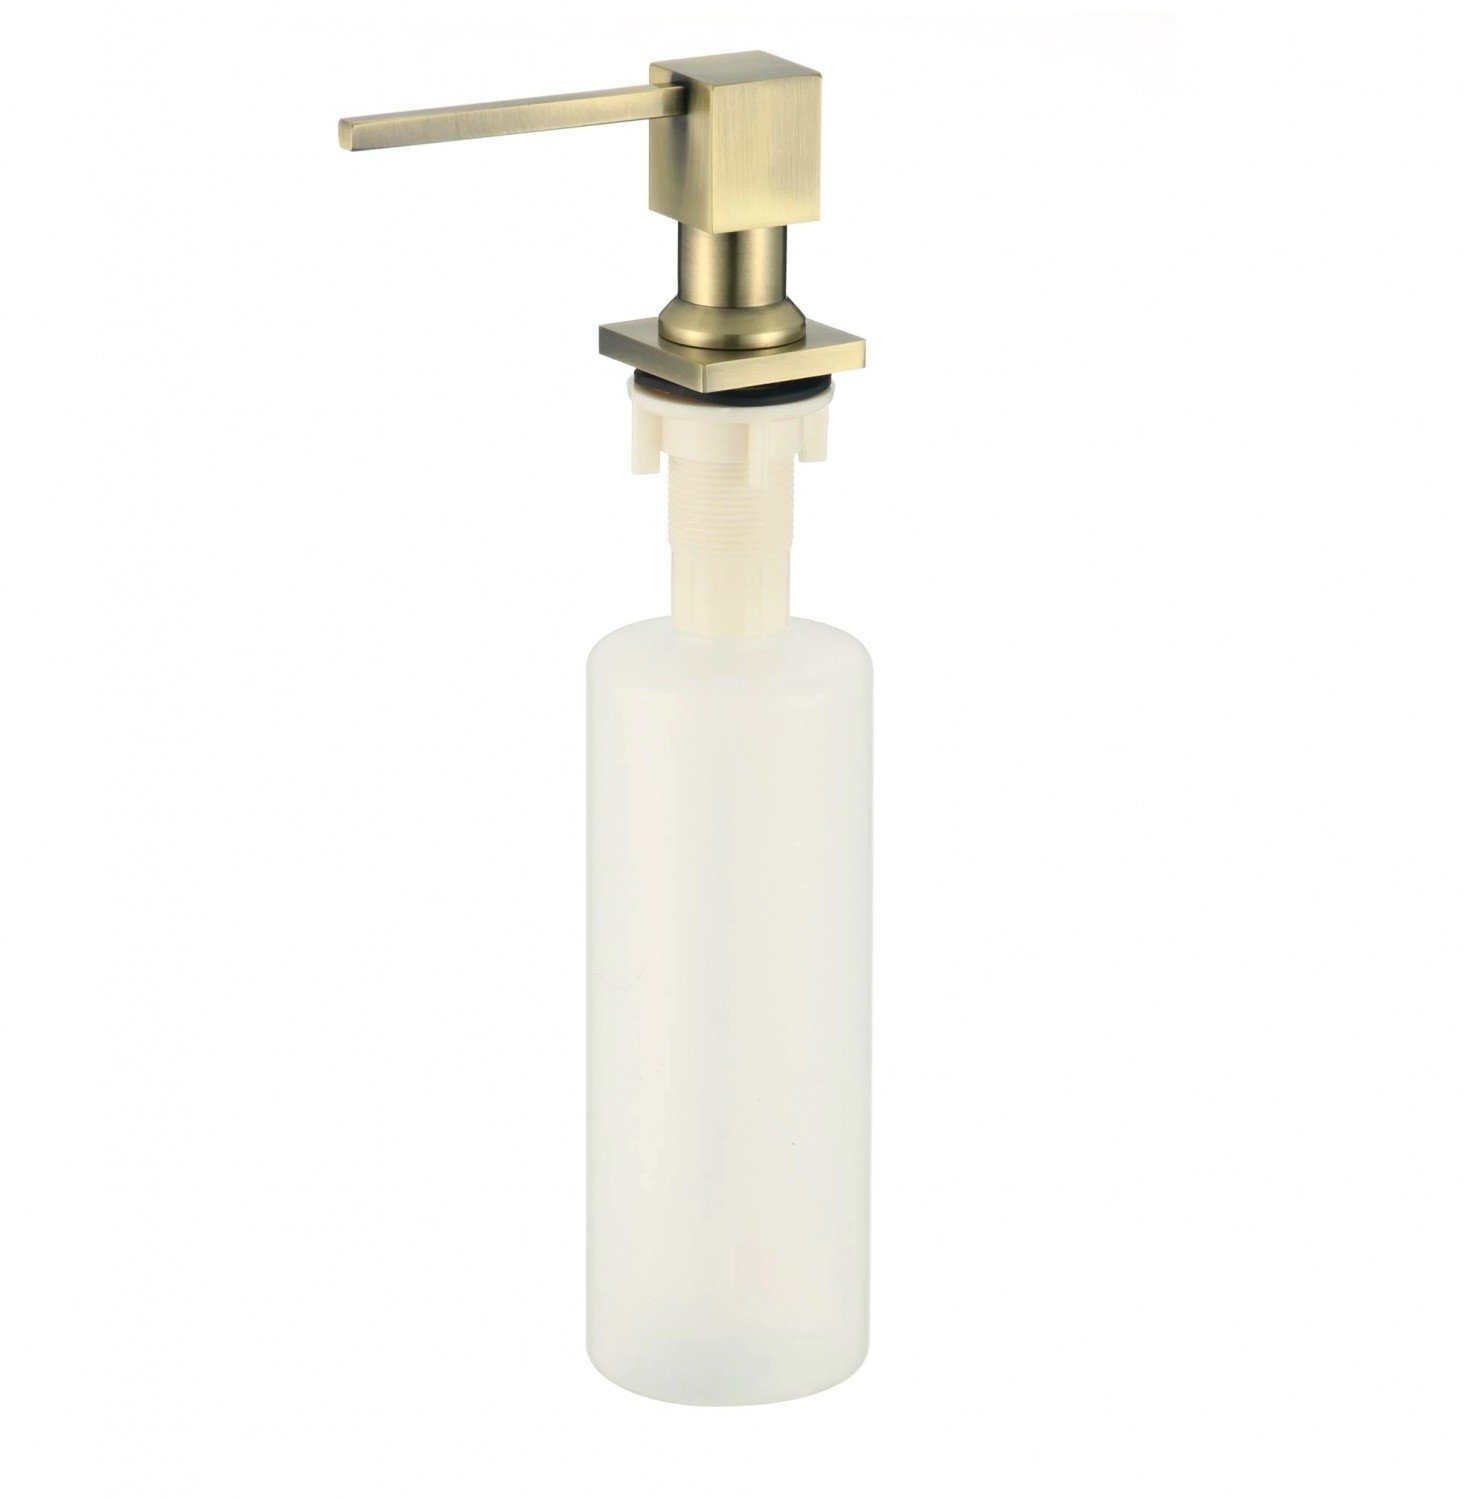 Savol S-ZY002C Встраиваемый дозатор для жидкого мыла или для моющего средства (бронза)